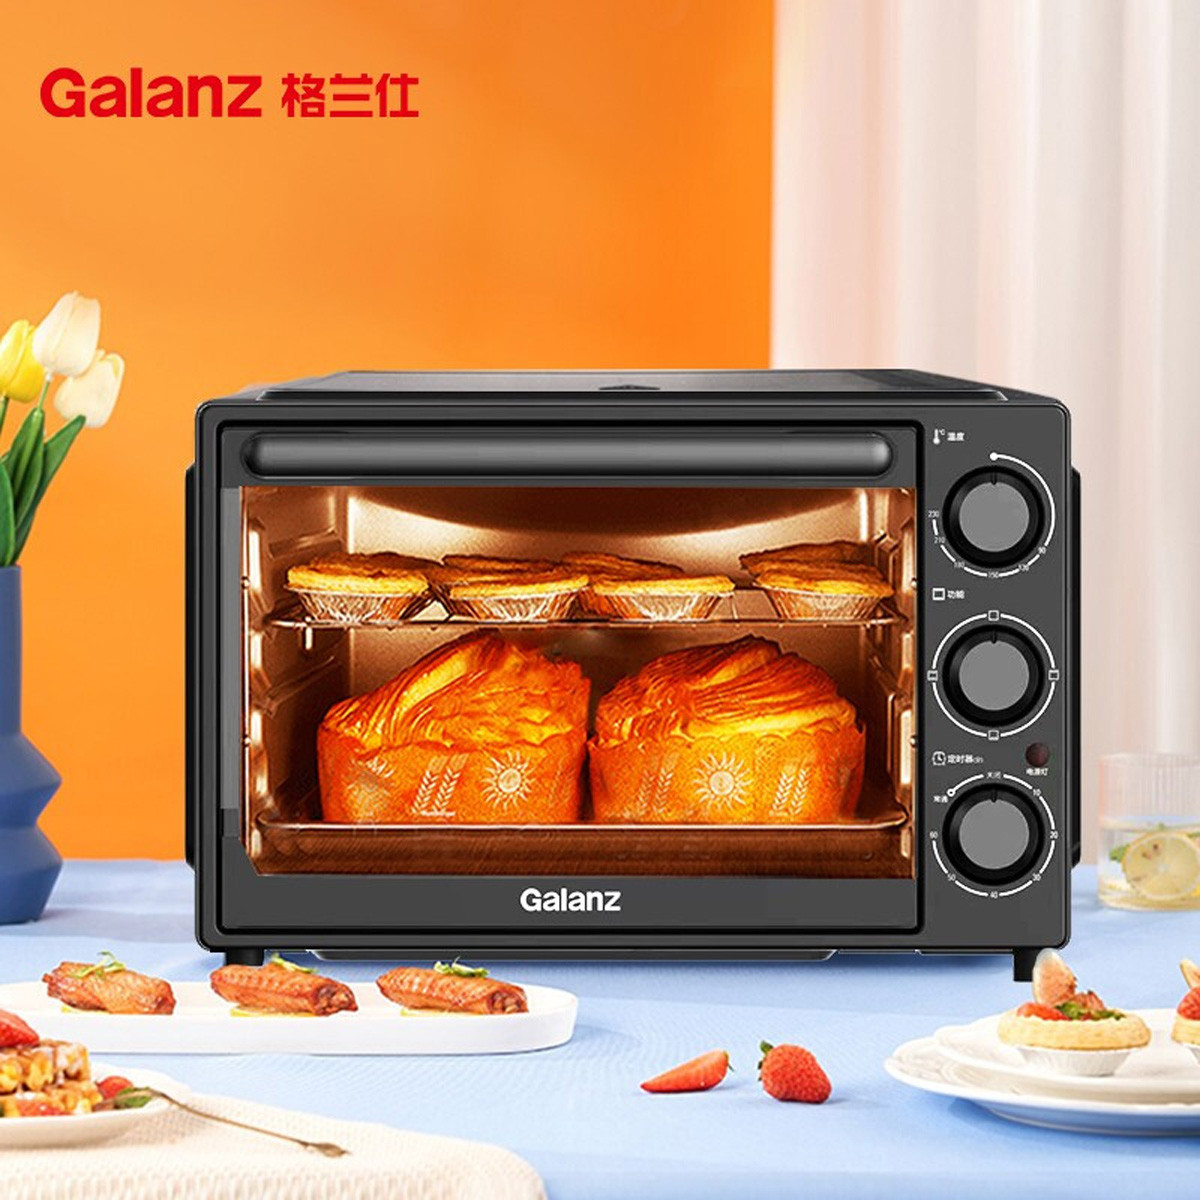 Galanz 格兰仕 电烤箱 多功能电烤箱 32升 机械式操控 上下精准控温 专业烘焙K